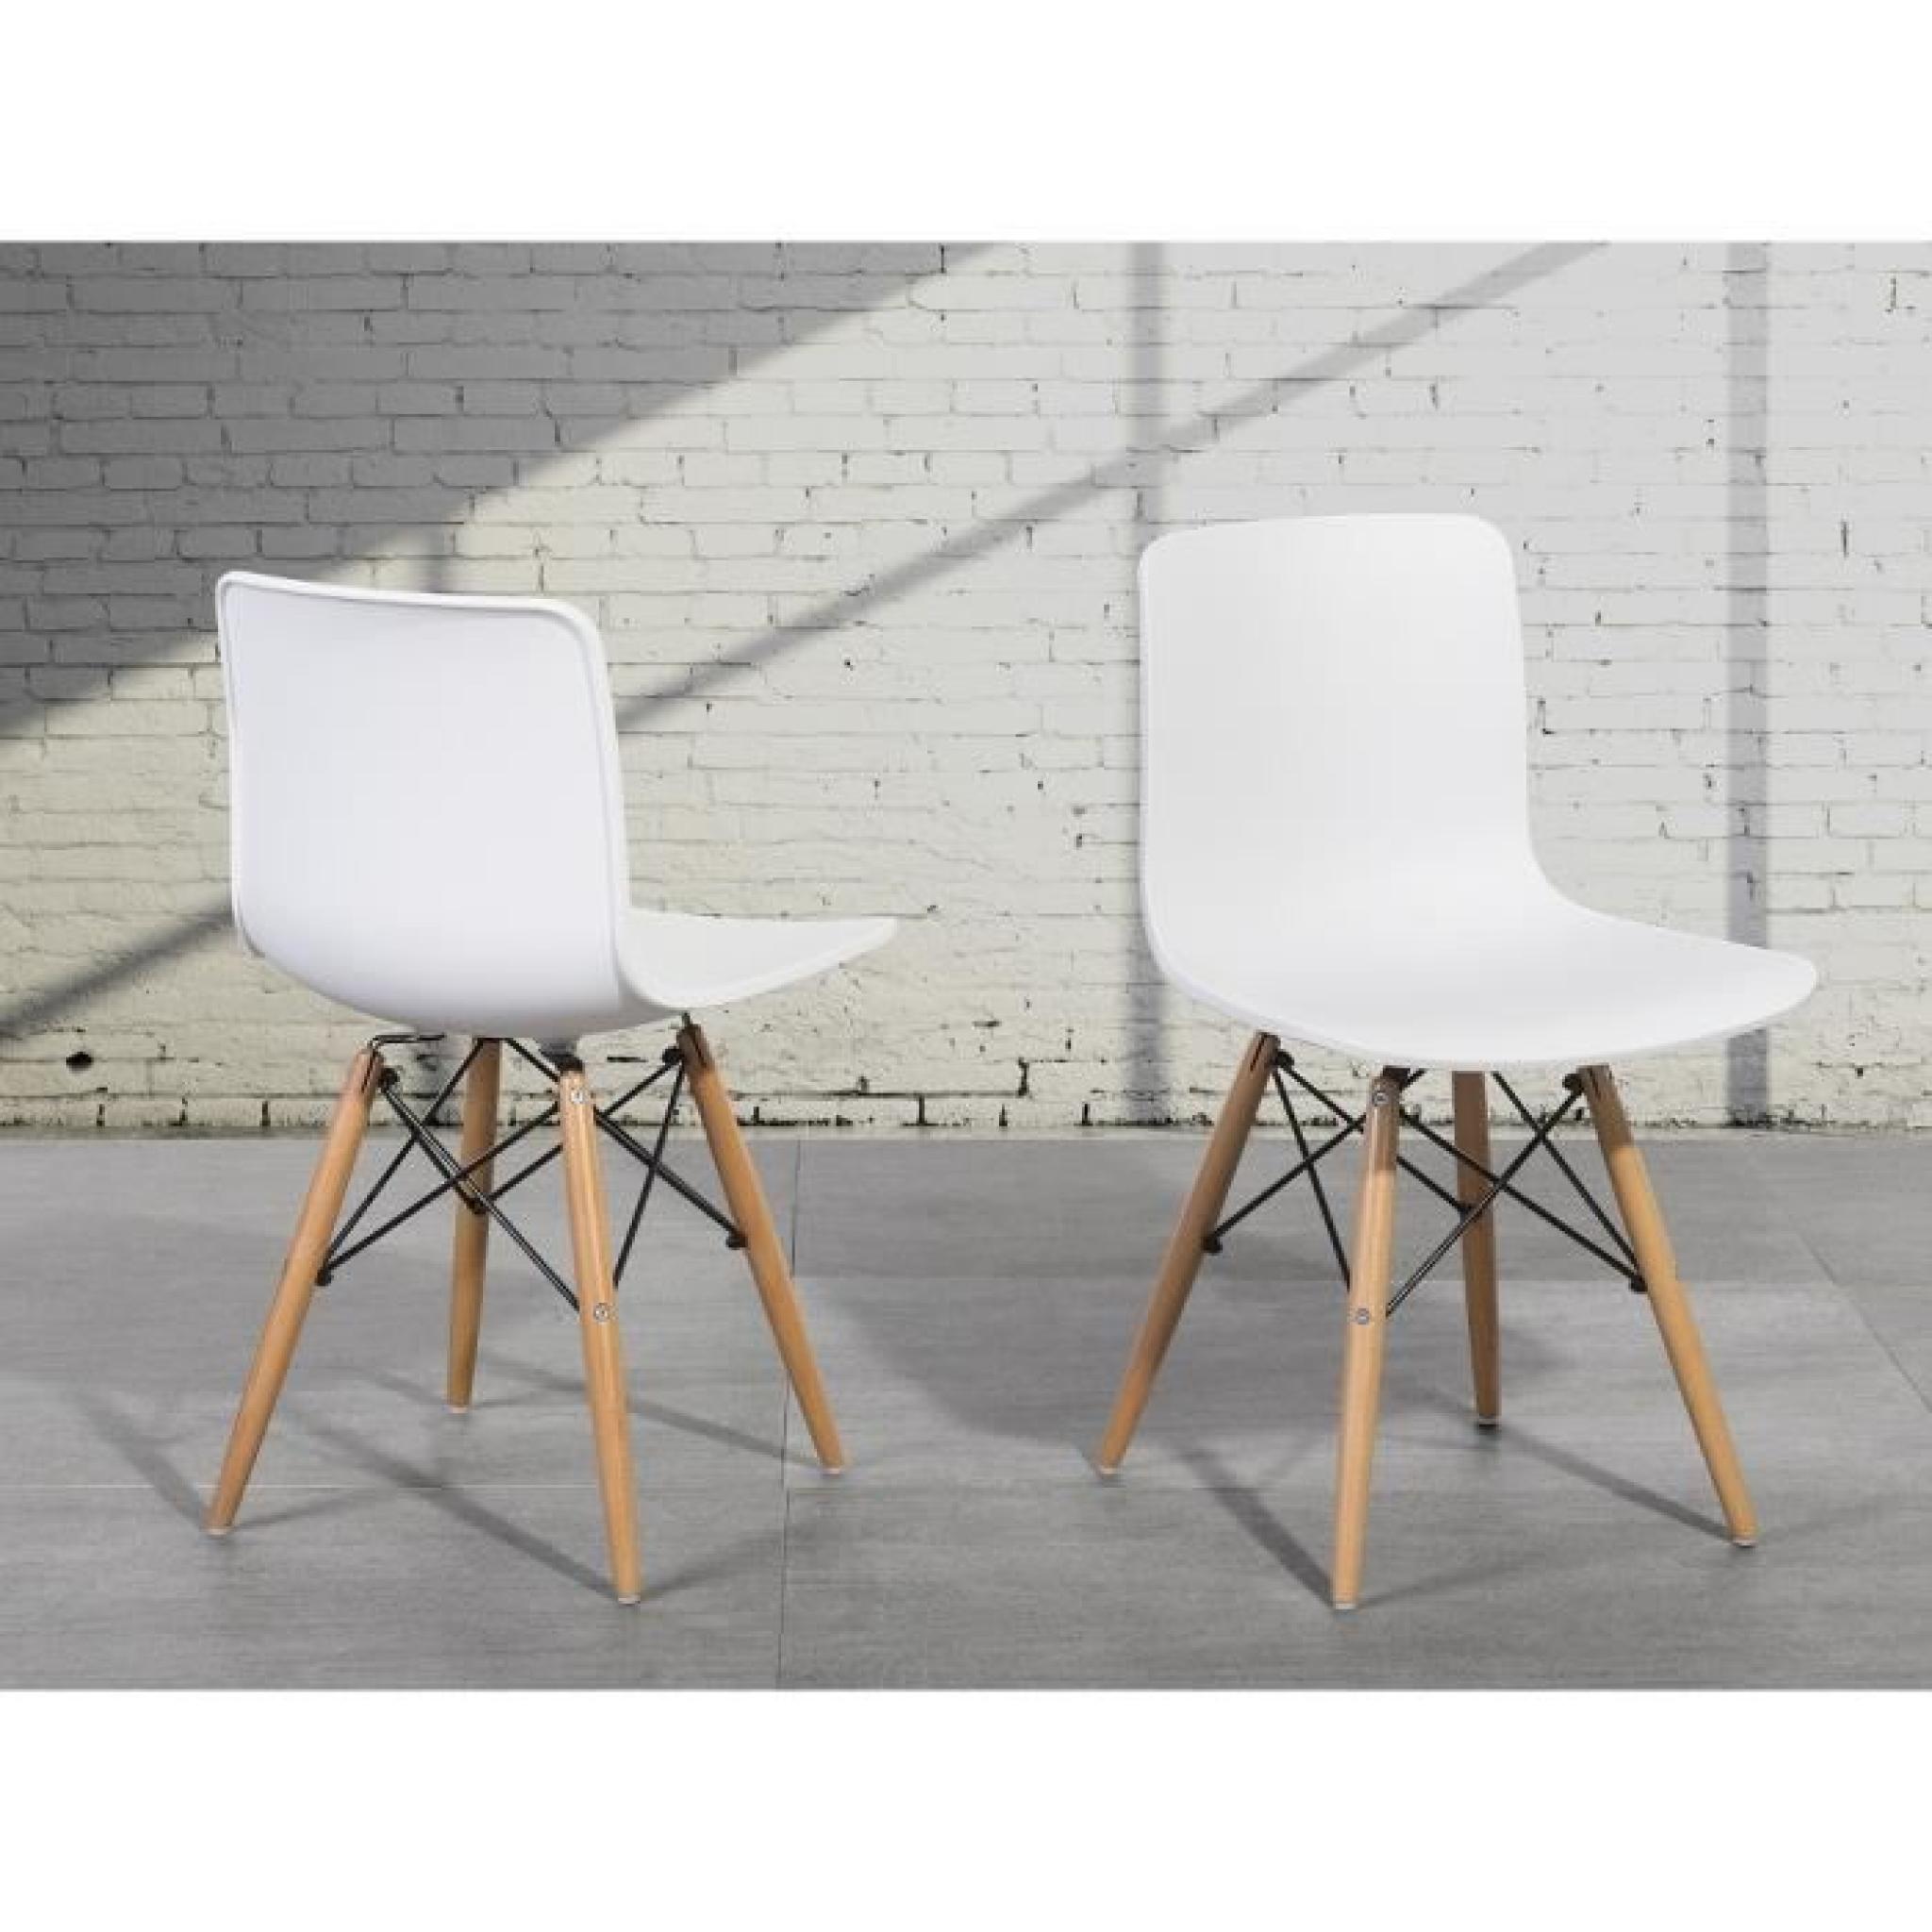 Chaise design - siège en plastique blanc - Soho